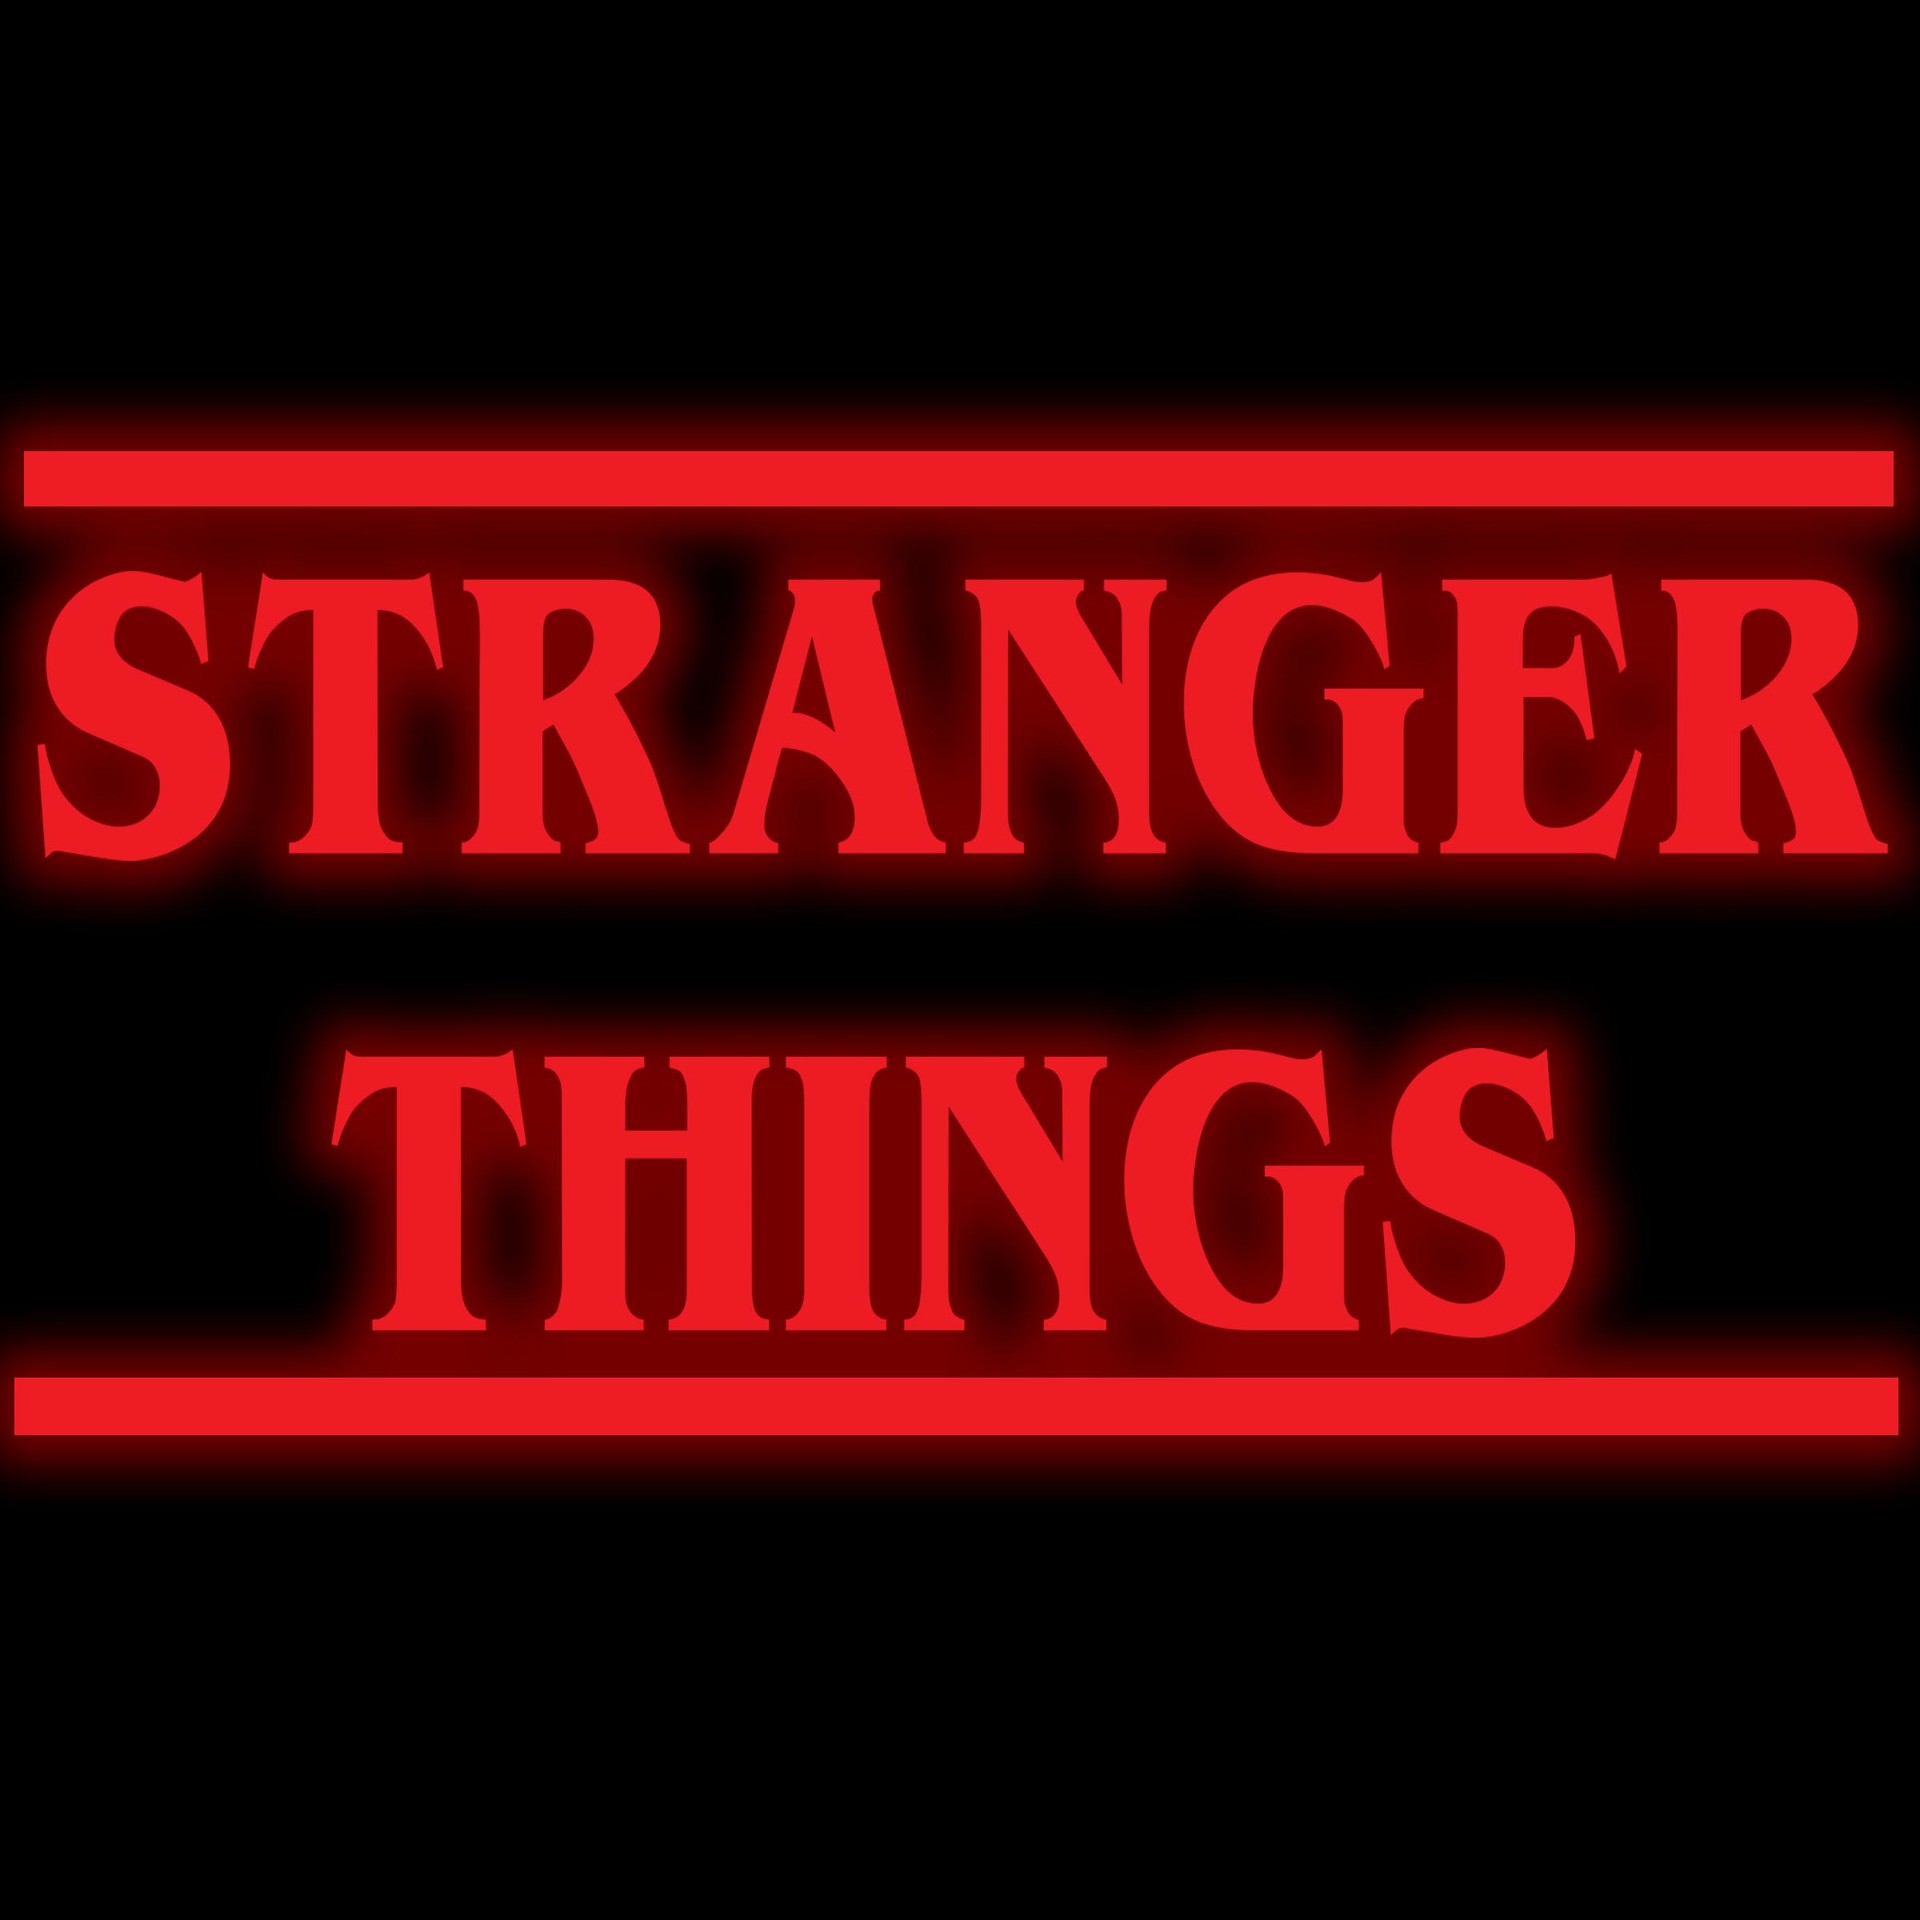 ArtStation - Stranger things